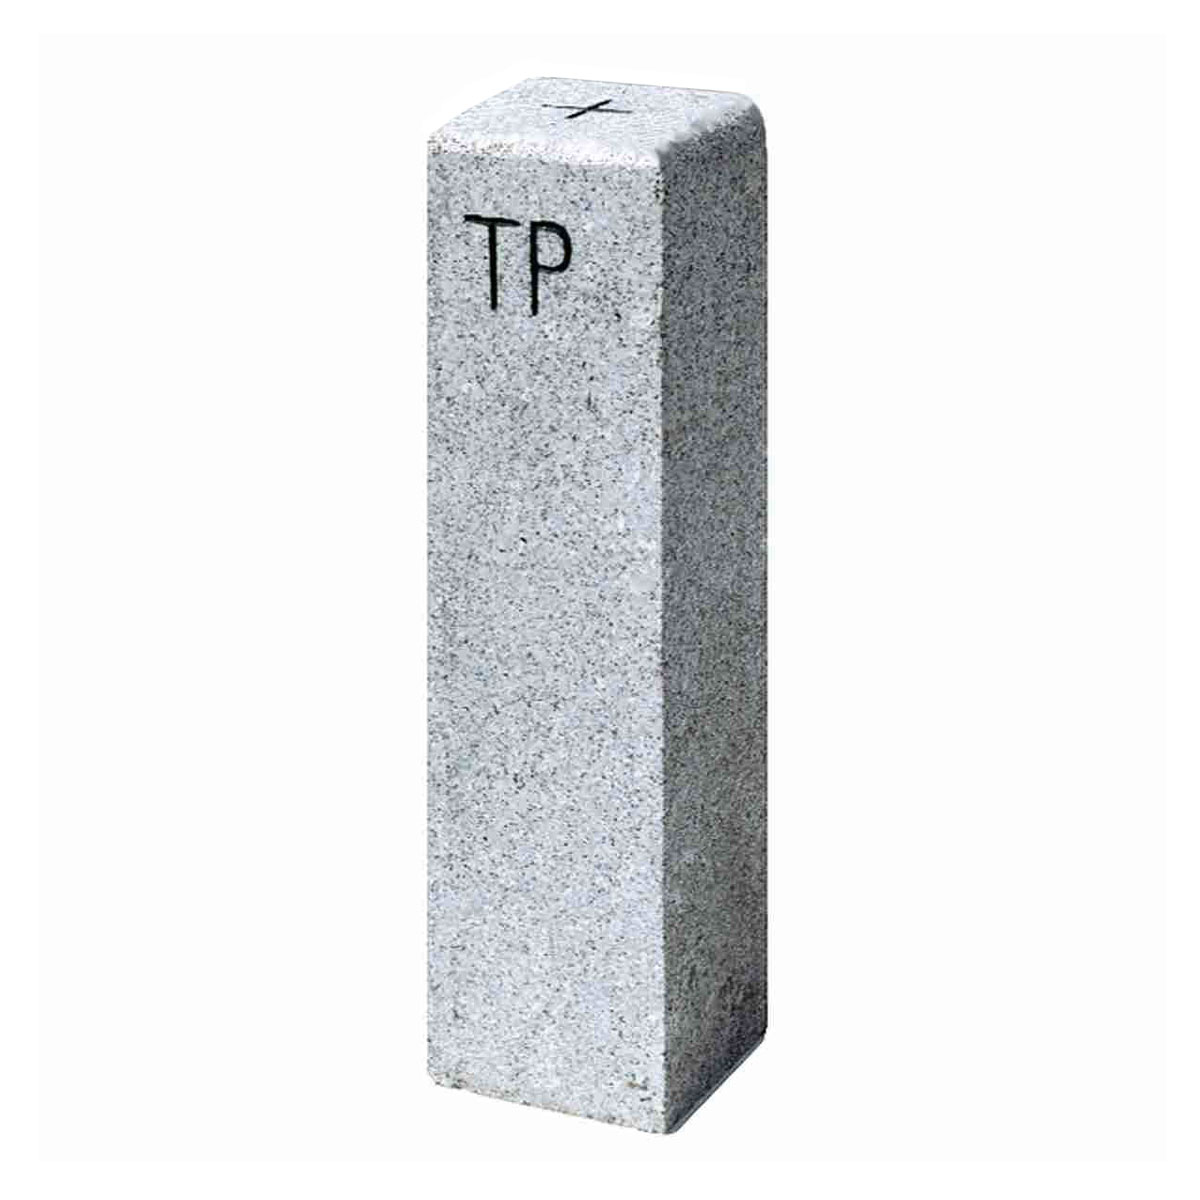 TP Pfeiler Granit, 25x25 cm Länge 90 cm, Strichkreuz und "TP"